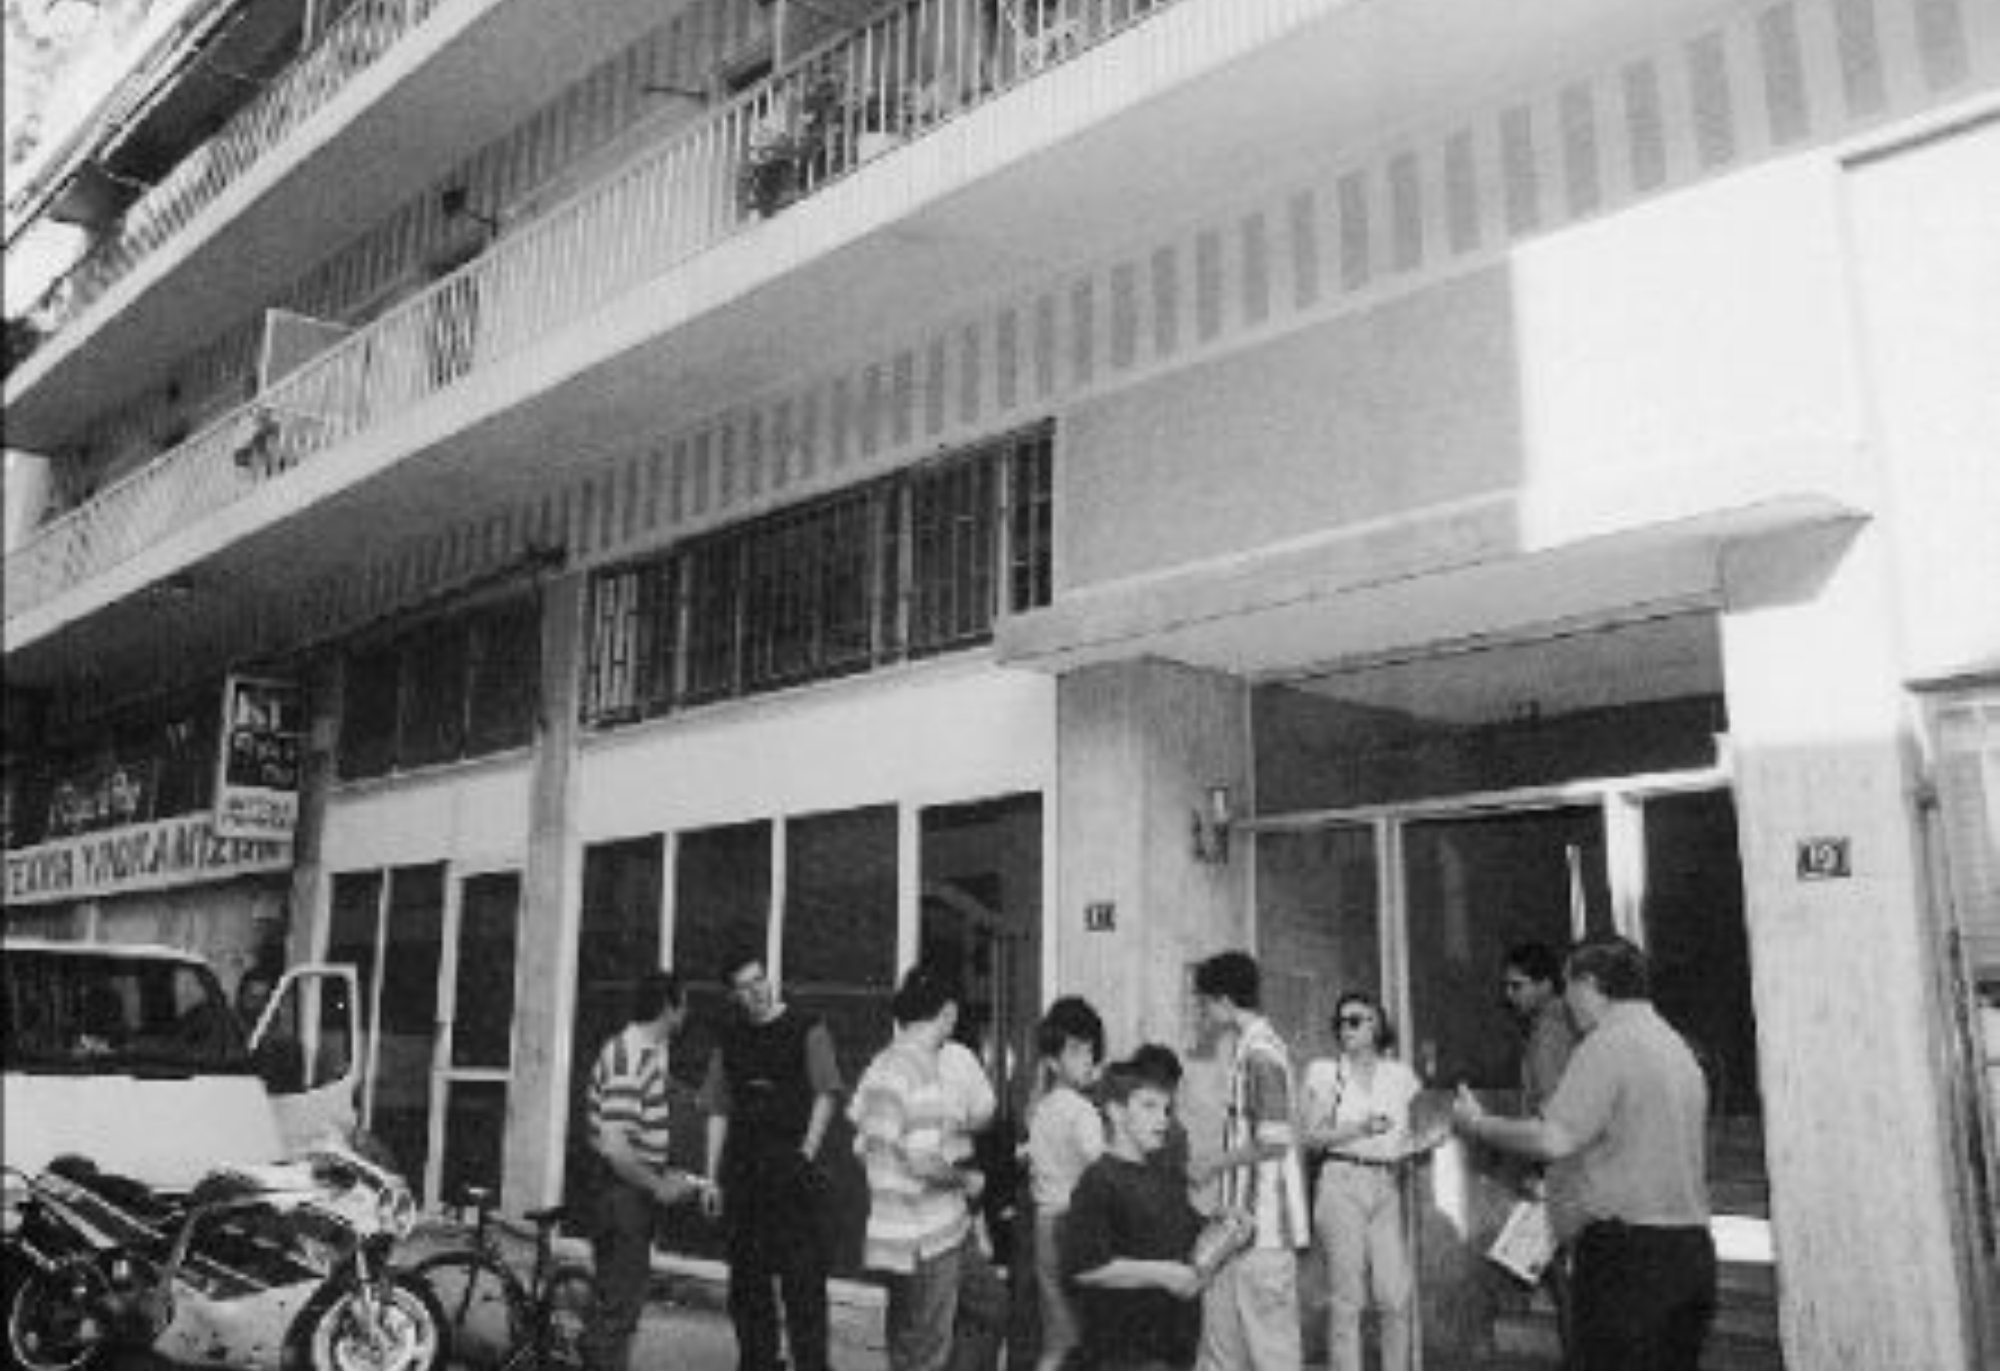 Παγκράτι 1997: Κρατούσαν το άψυχο σώμα του παιδιού τους για μέρες μέσα στο διαμέρισμα έκλειναν τα μάτια στην αλήθεια- Το διαμέρισμα ήταν βυθισμένο στην απόλυτη σιωπή